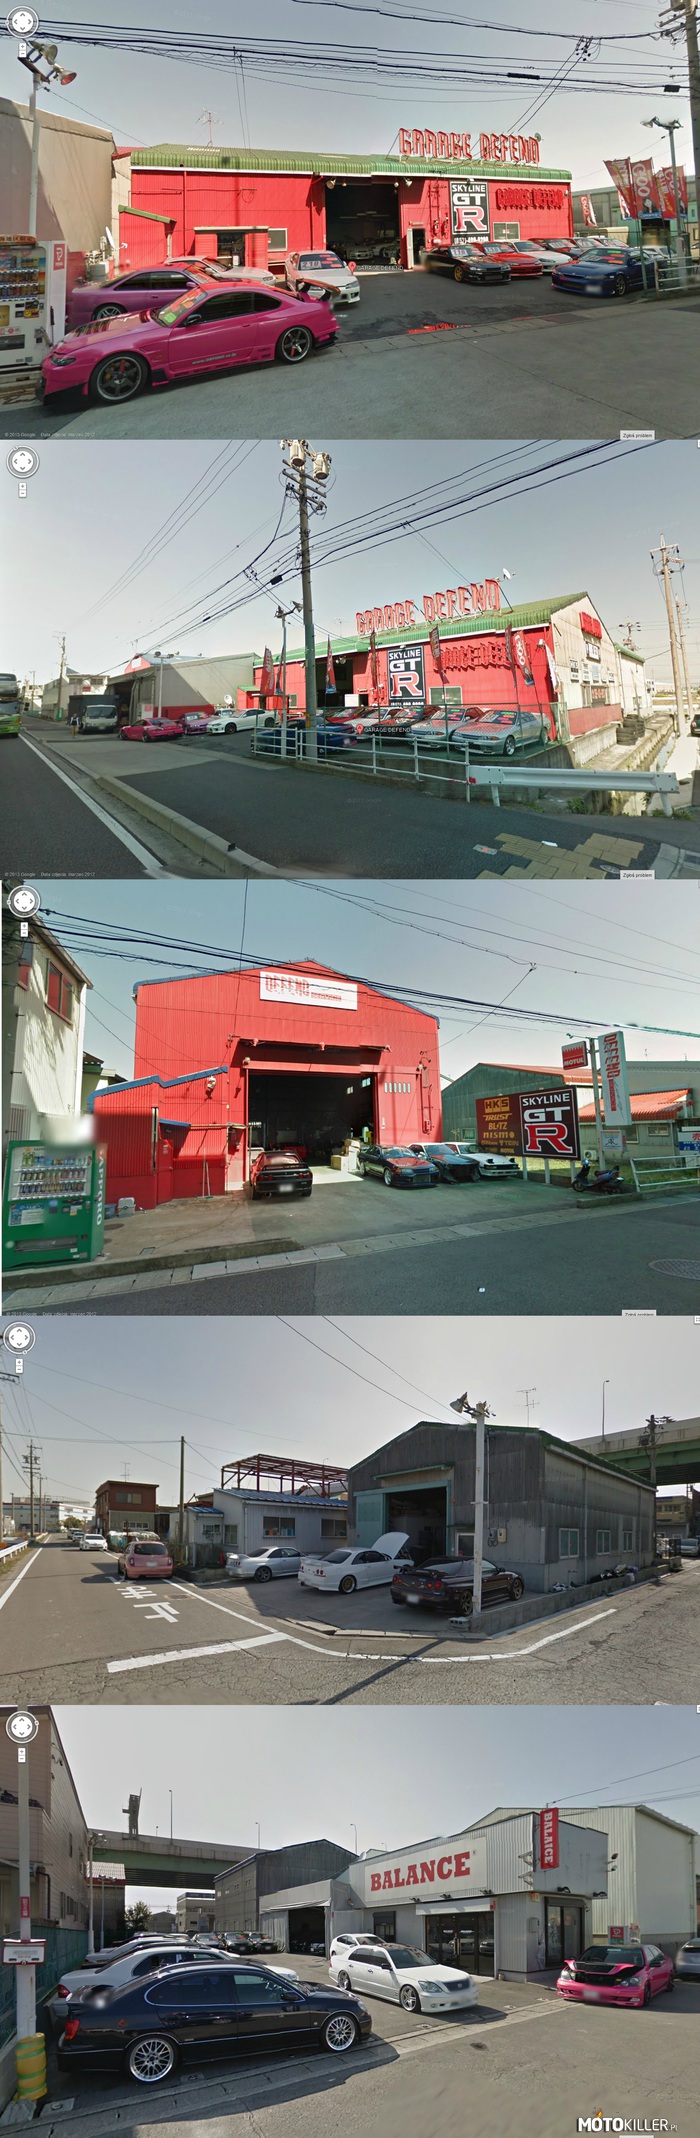 Co widać w Street View v3 – Jeśli ktoś to znajdzie polecam obejrzeć uliczki za garażem 